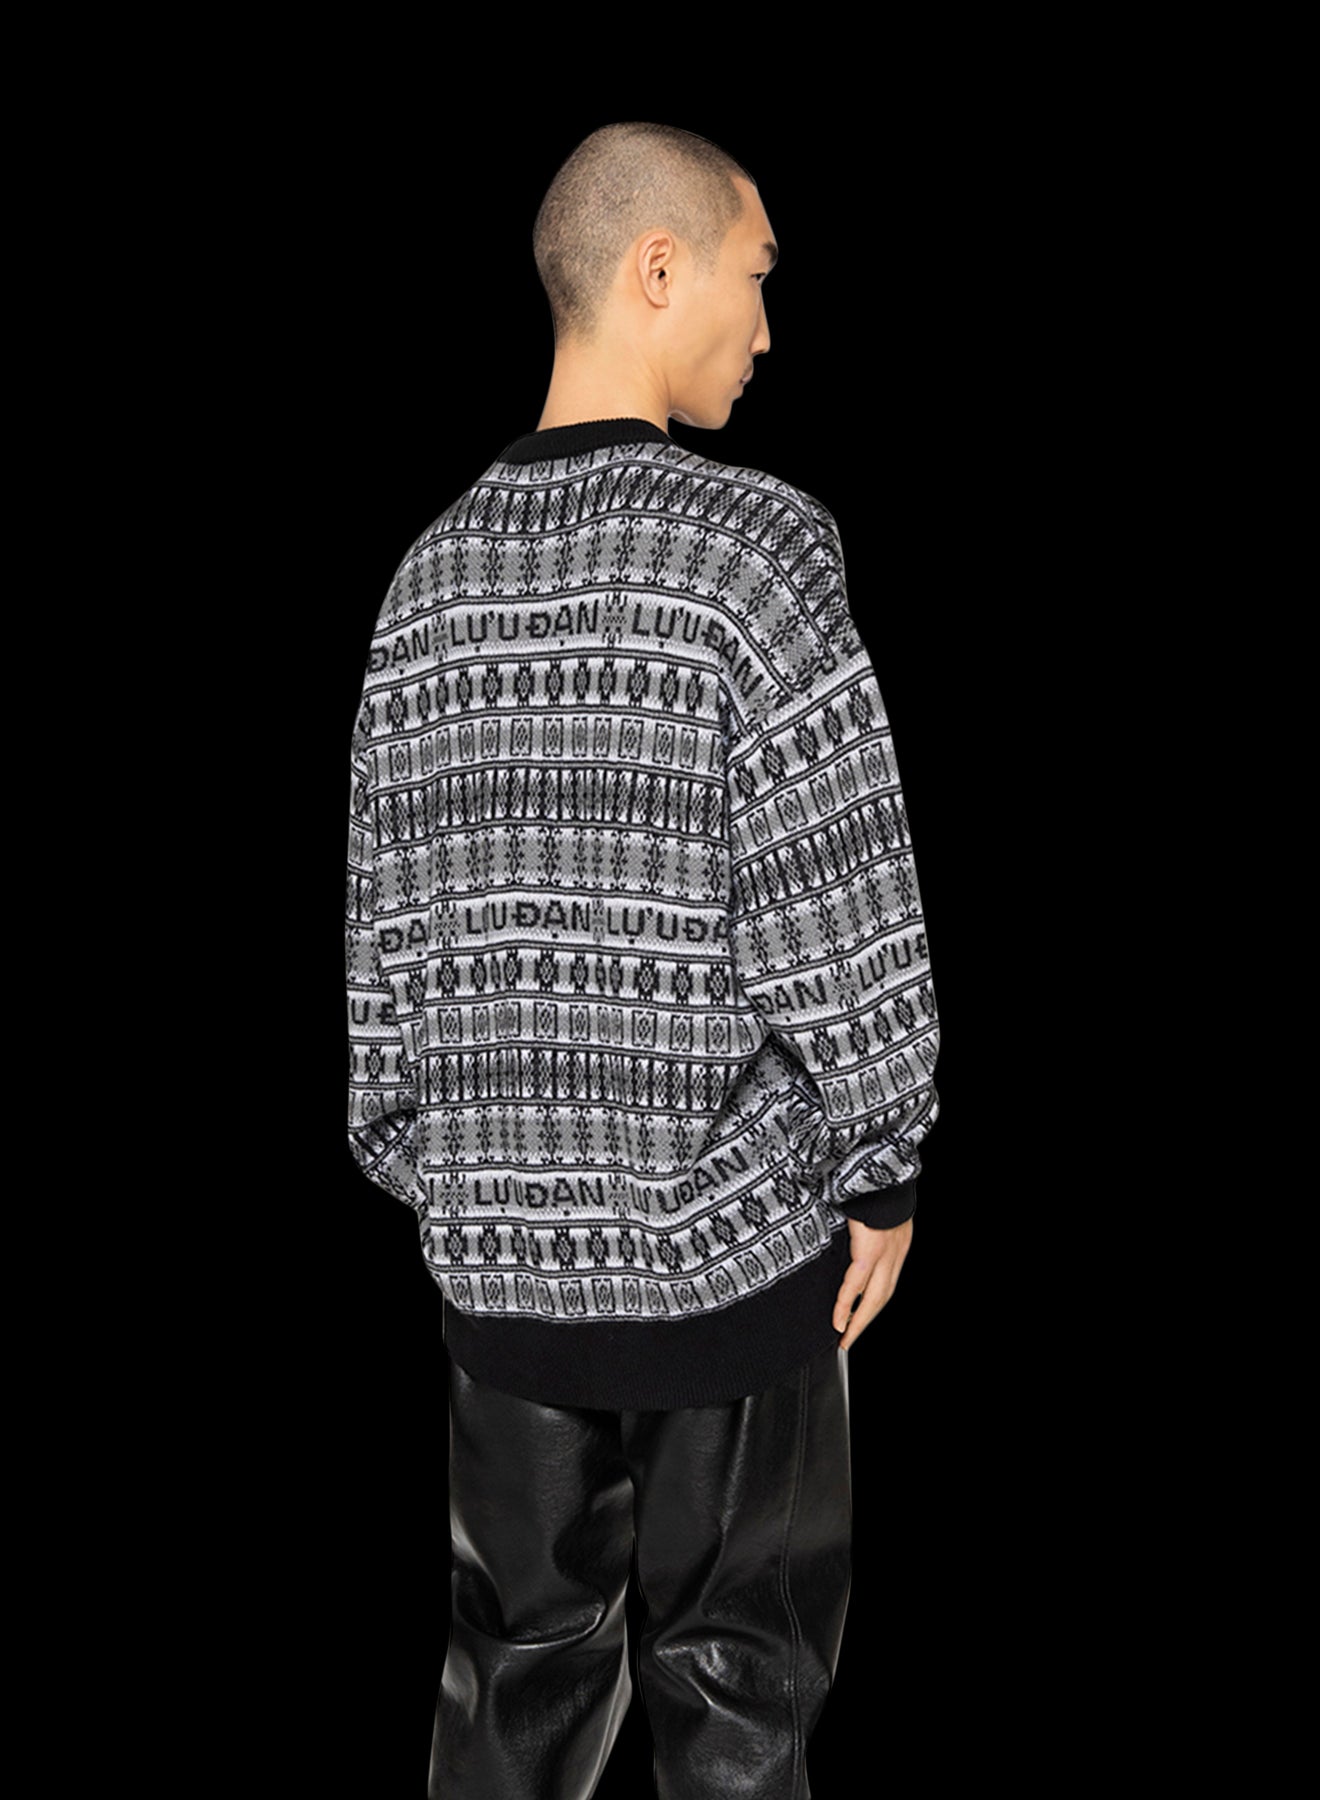 Jacquard-knit Sweater - Beige/leopard print - Ladies